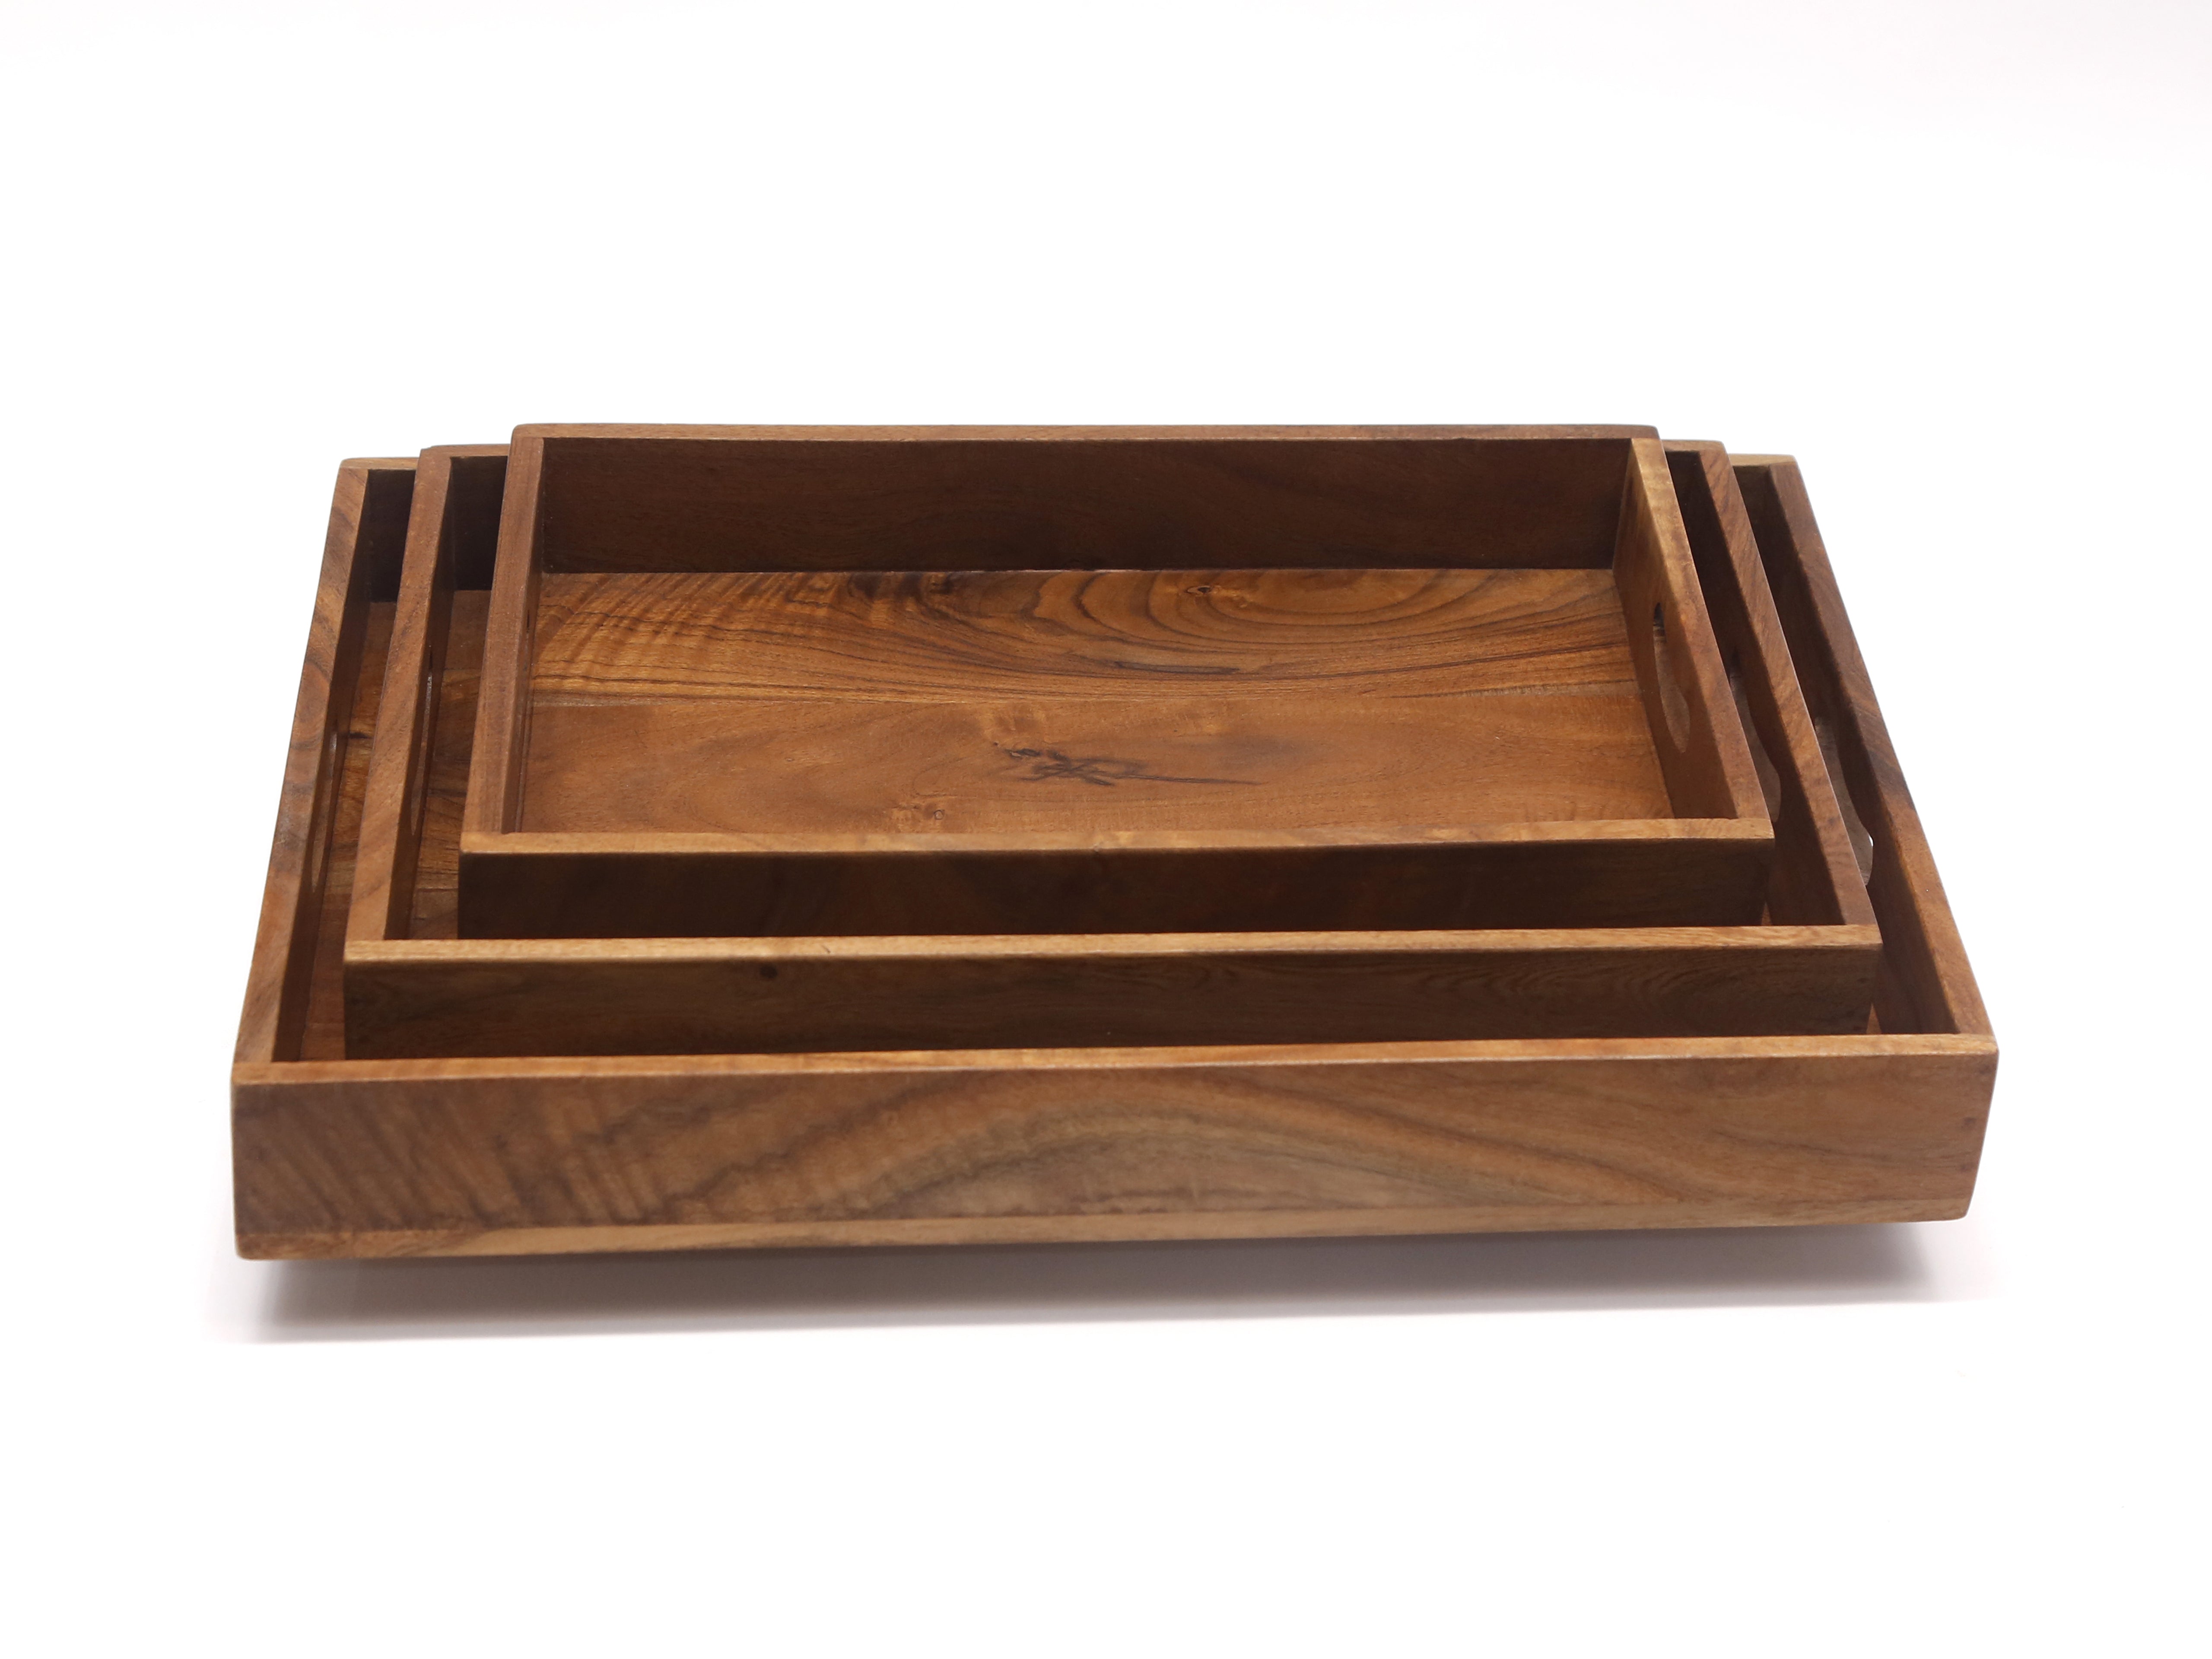 Inclined Wooden Box Tray Set Tray